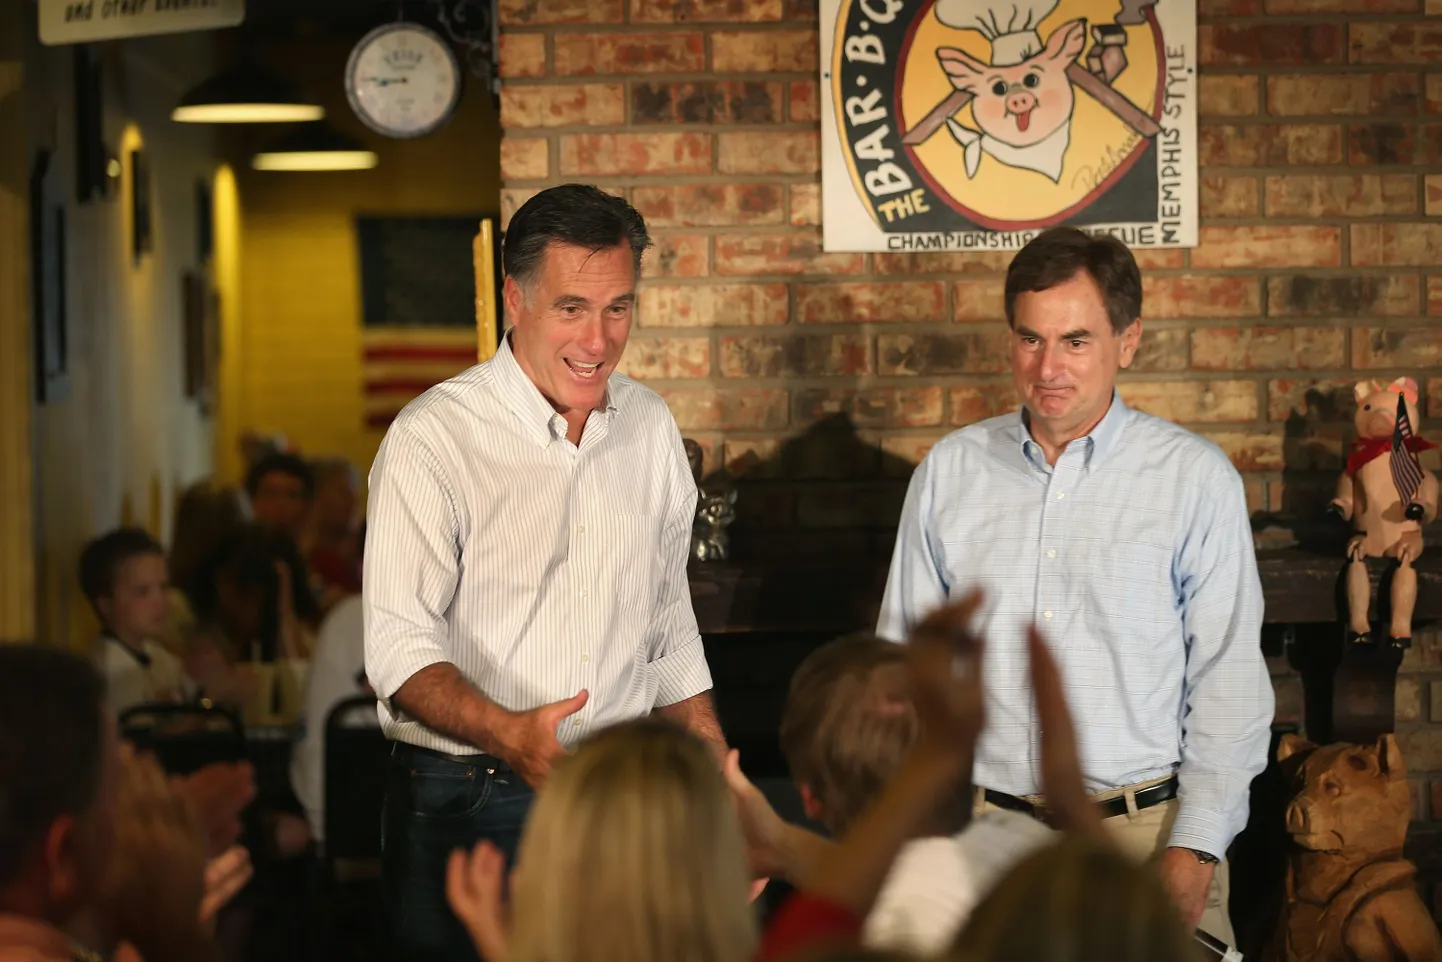 Vabariiklaste presidendikandidaat Mitt Romney (vasakul) augustis koos USA senatisse kandideeriva Richard Mourdockiga. Obama kampaania nõuab, et Romney loobuks nüüd Mourdockit toetamast.